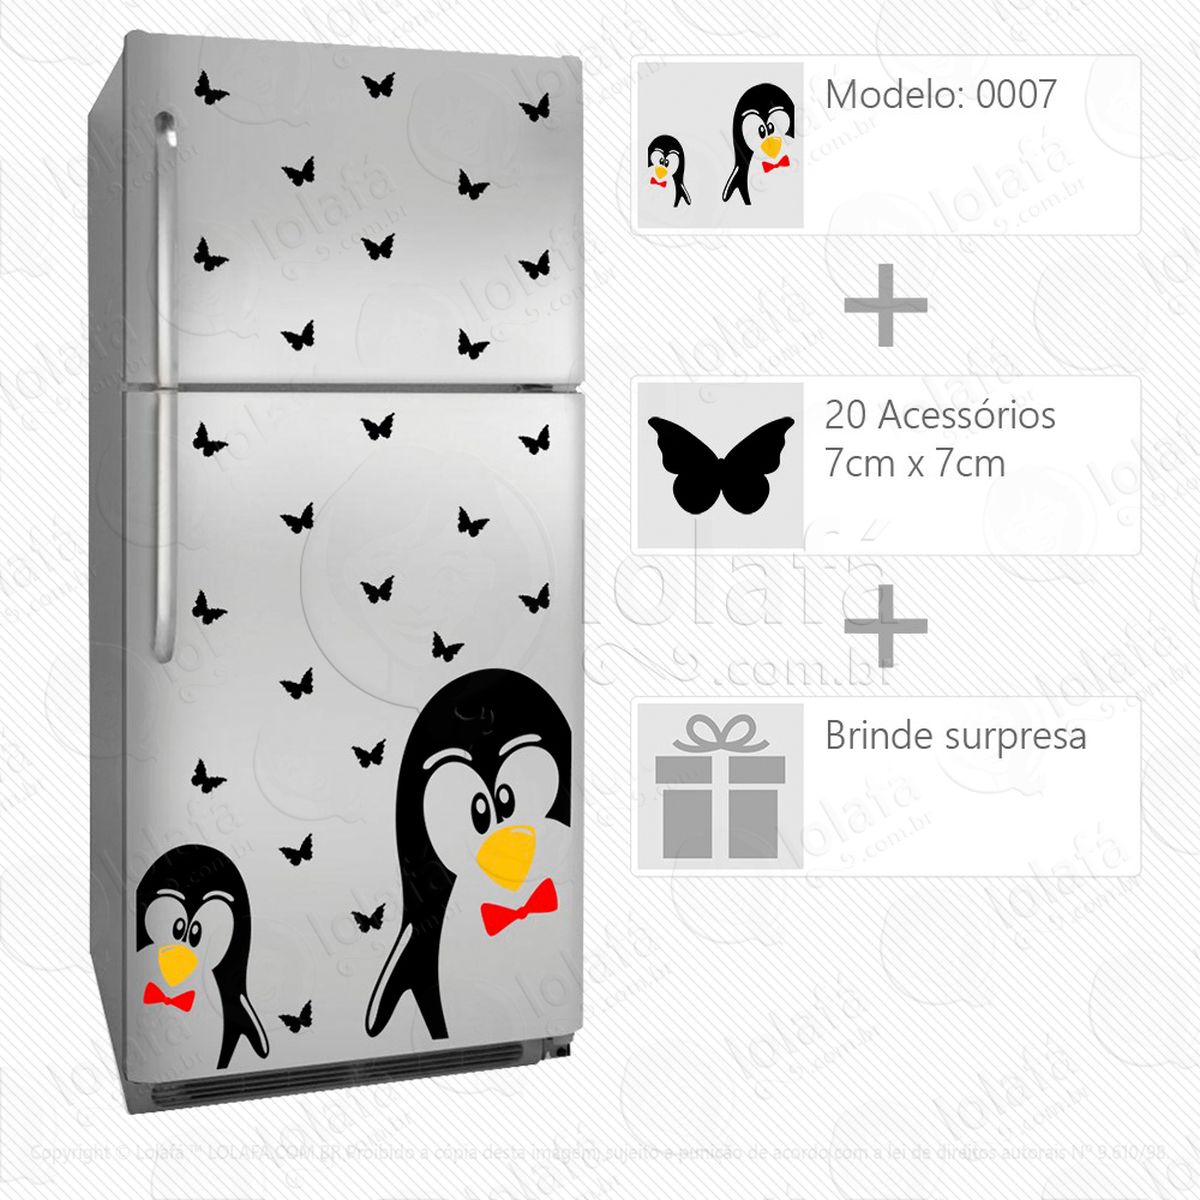 pinguins adesivo para geladeira e frigobar - mod:7